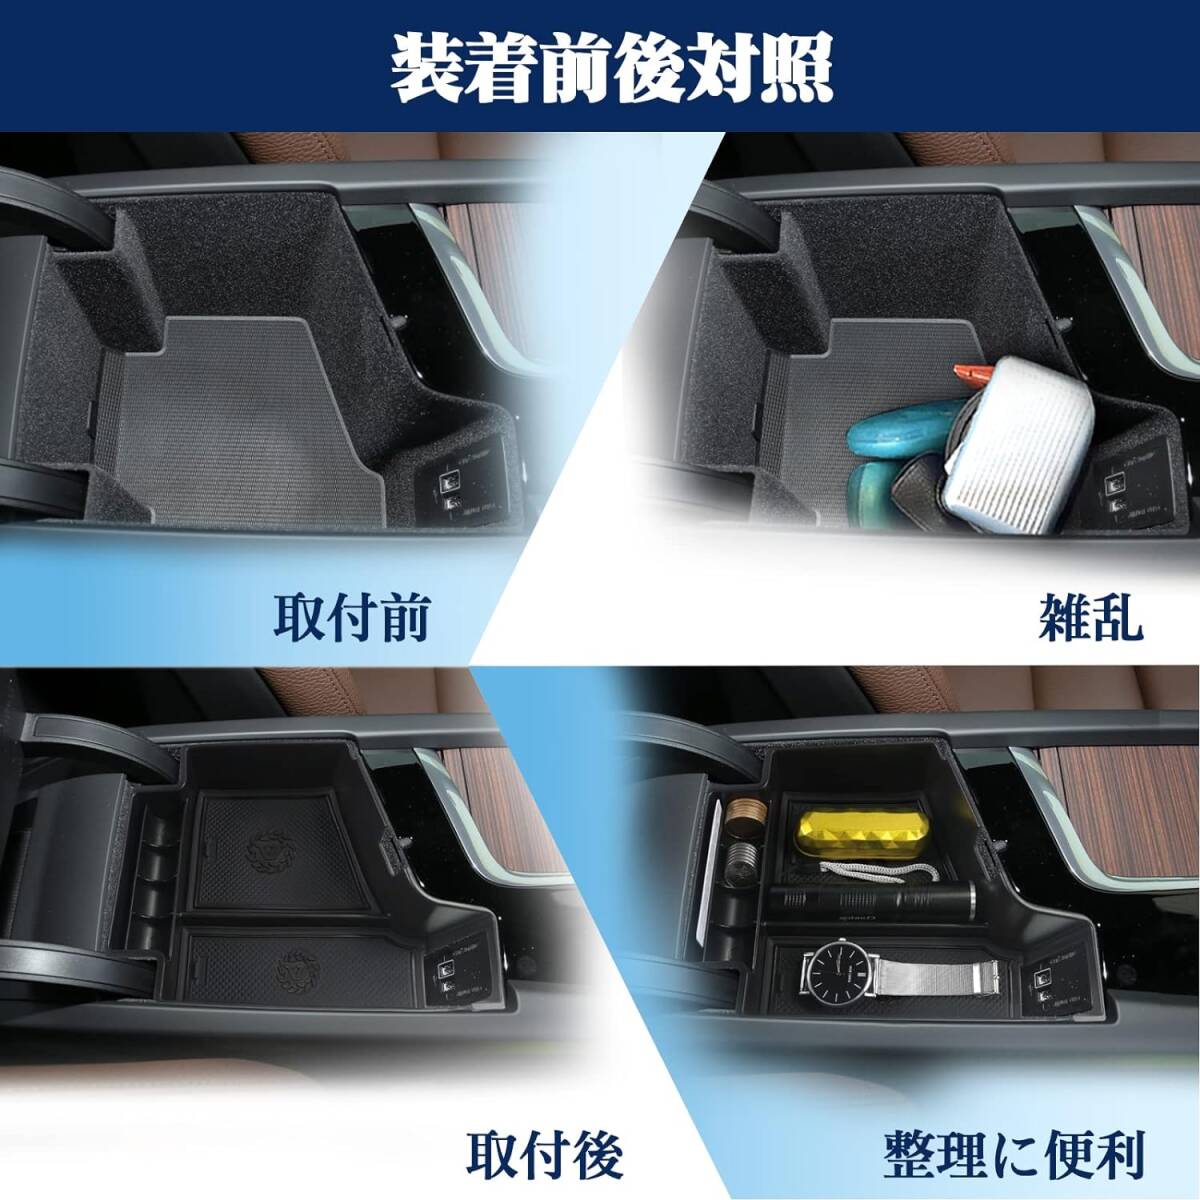 【RUIYA】ボルボ XC60 センターコンソールトレイ ボルボ XC60コンソールボックス 小物入れトレイ 車種専用 車内収納ボックス (黑)